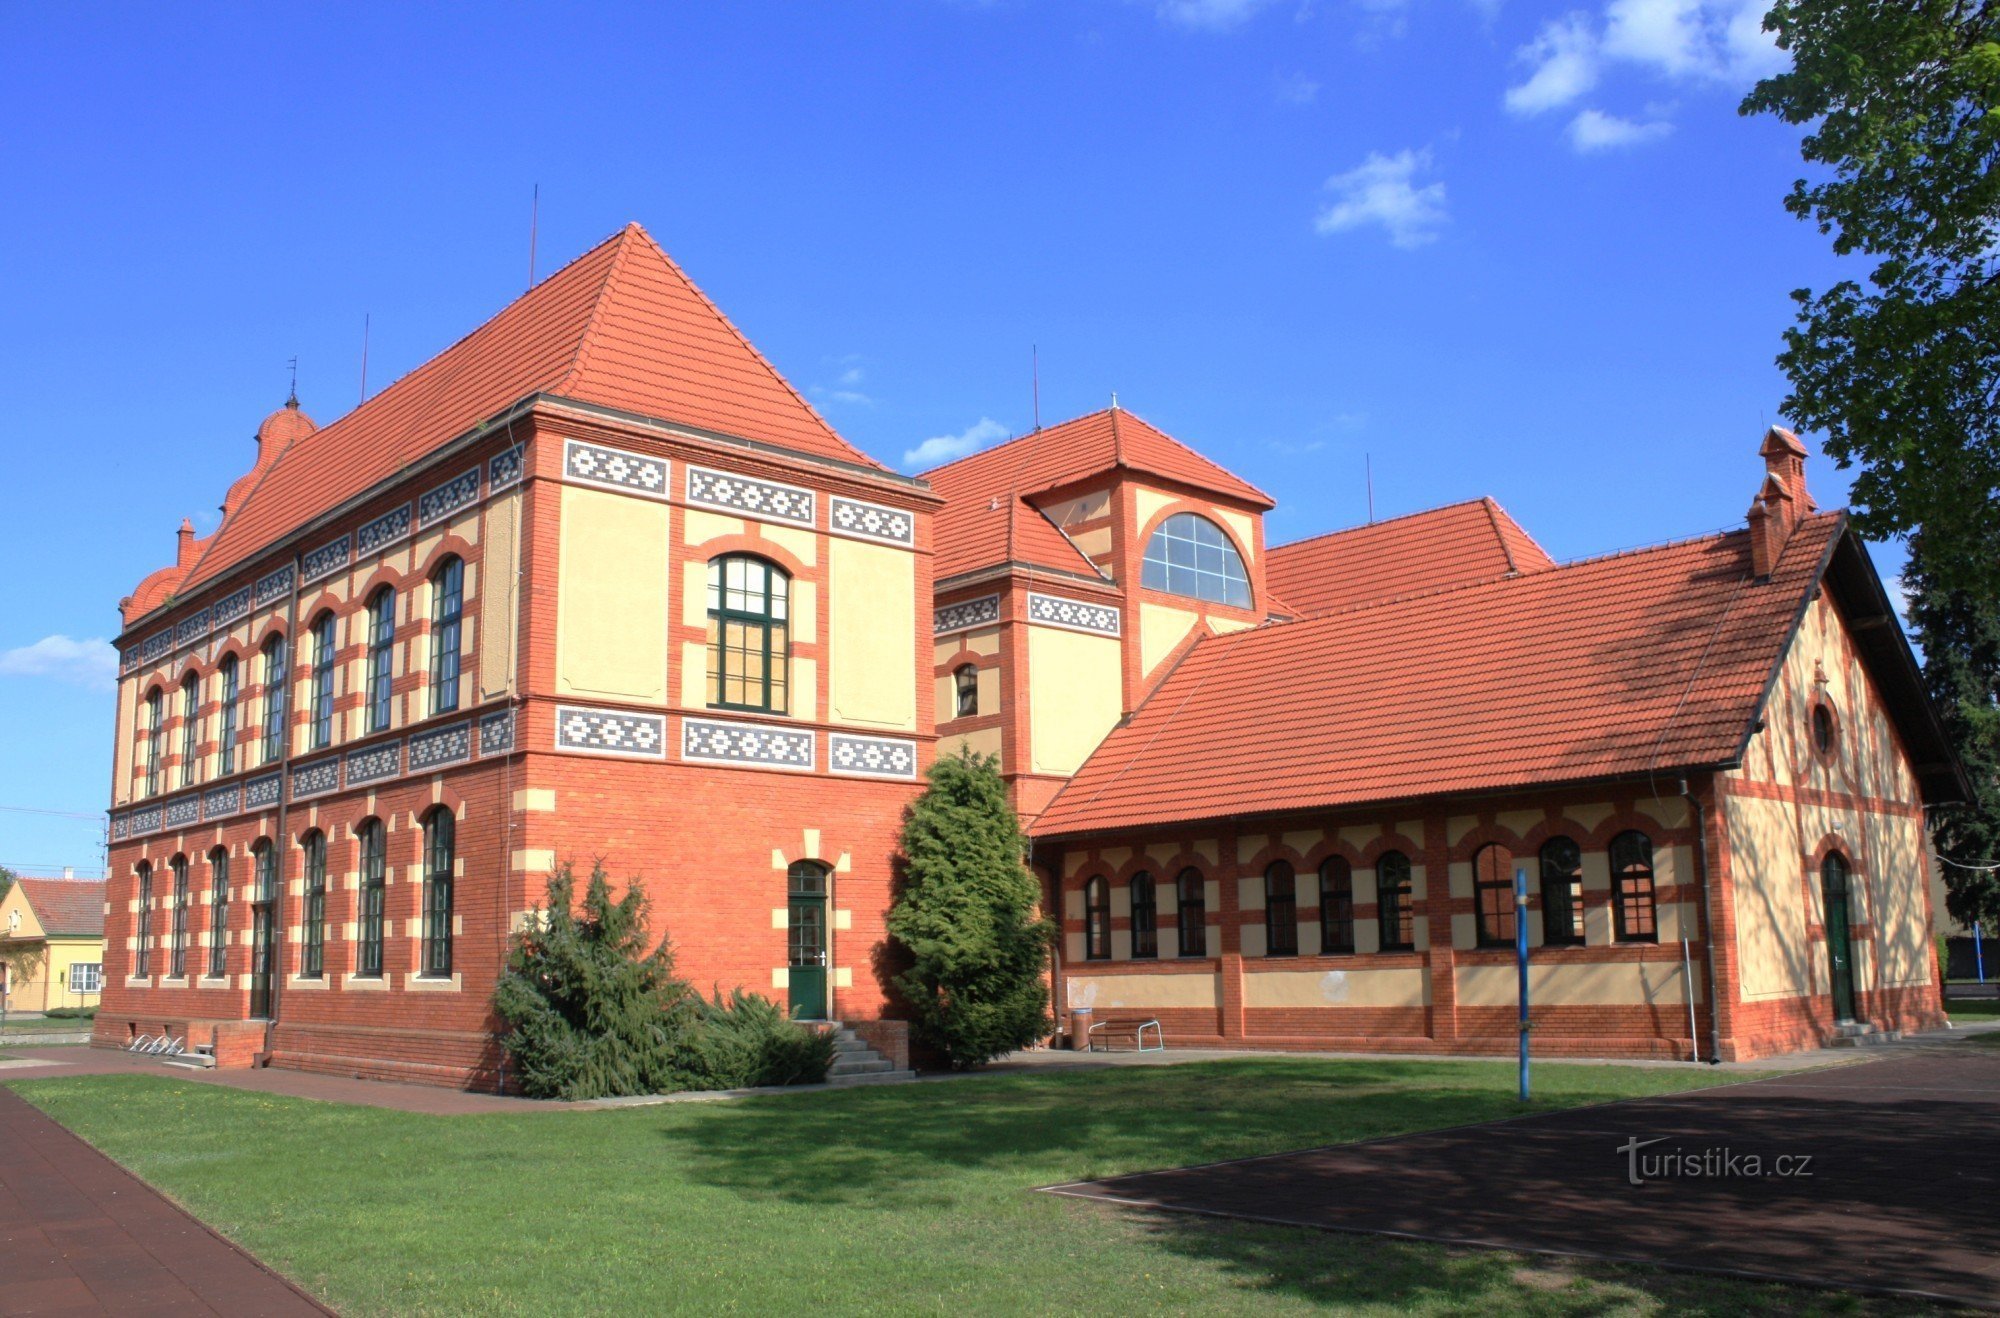 Posta - általános iskola épülete